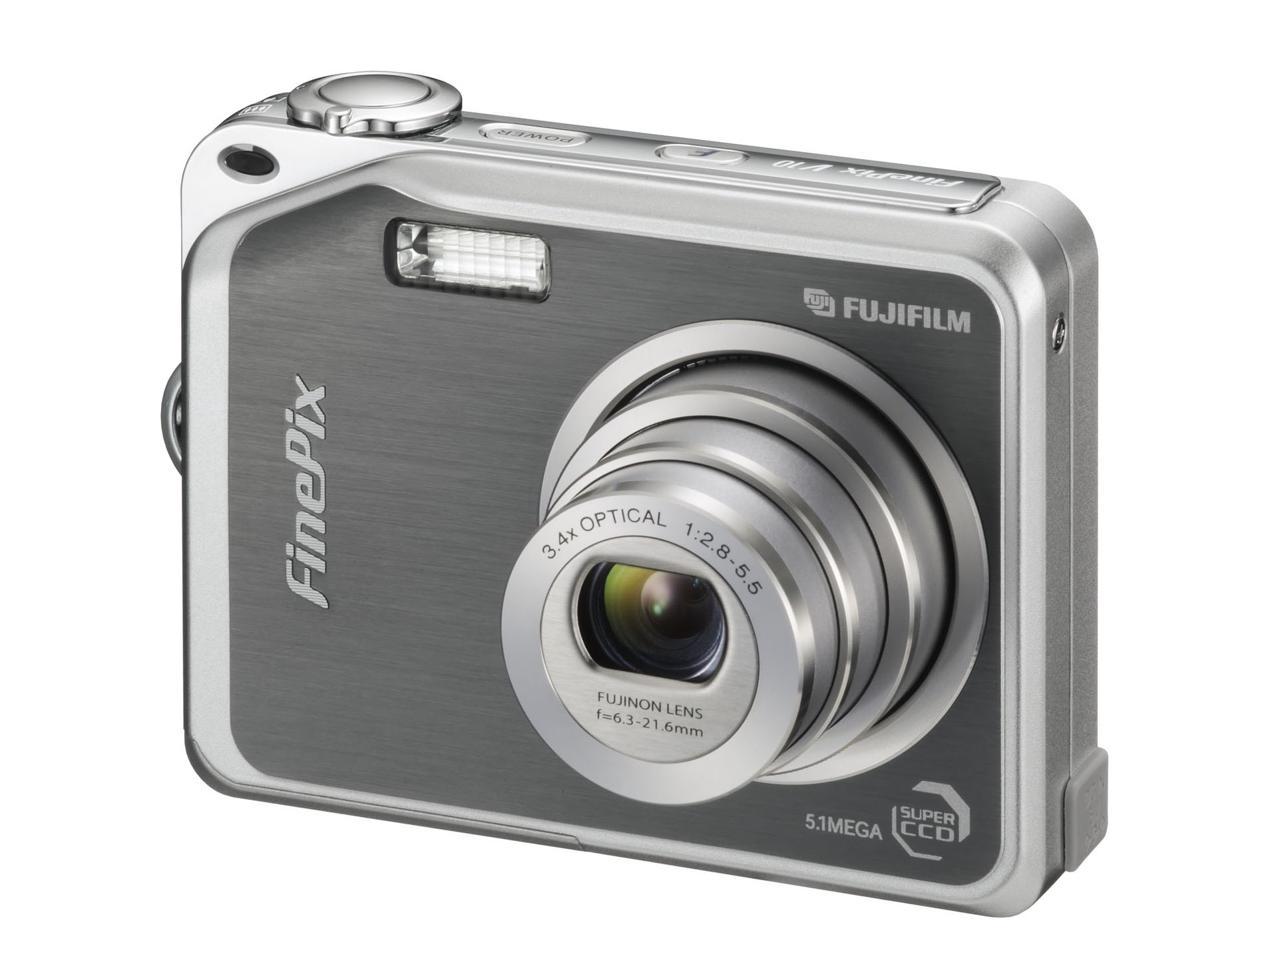 Ремонт фотоаппаратов fujifilm. Фуджифильм фотоаппарат 10.2 мега. Fujifilm v10. Фотокамера FINEPIX v10. Мини камера Фуджифильм FINEPIX C 10 мегапикселей.